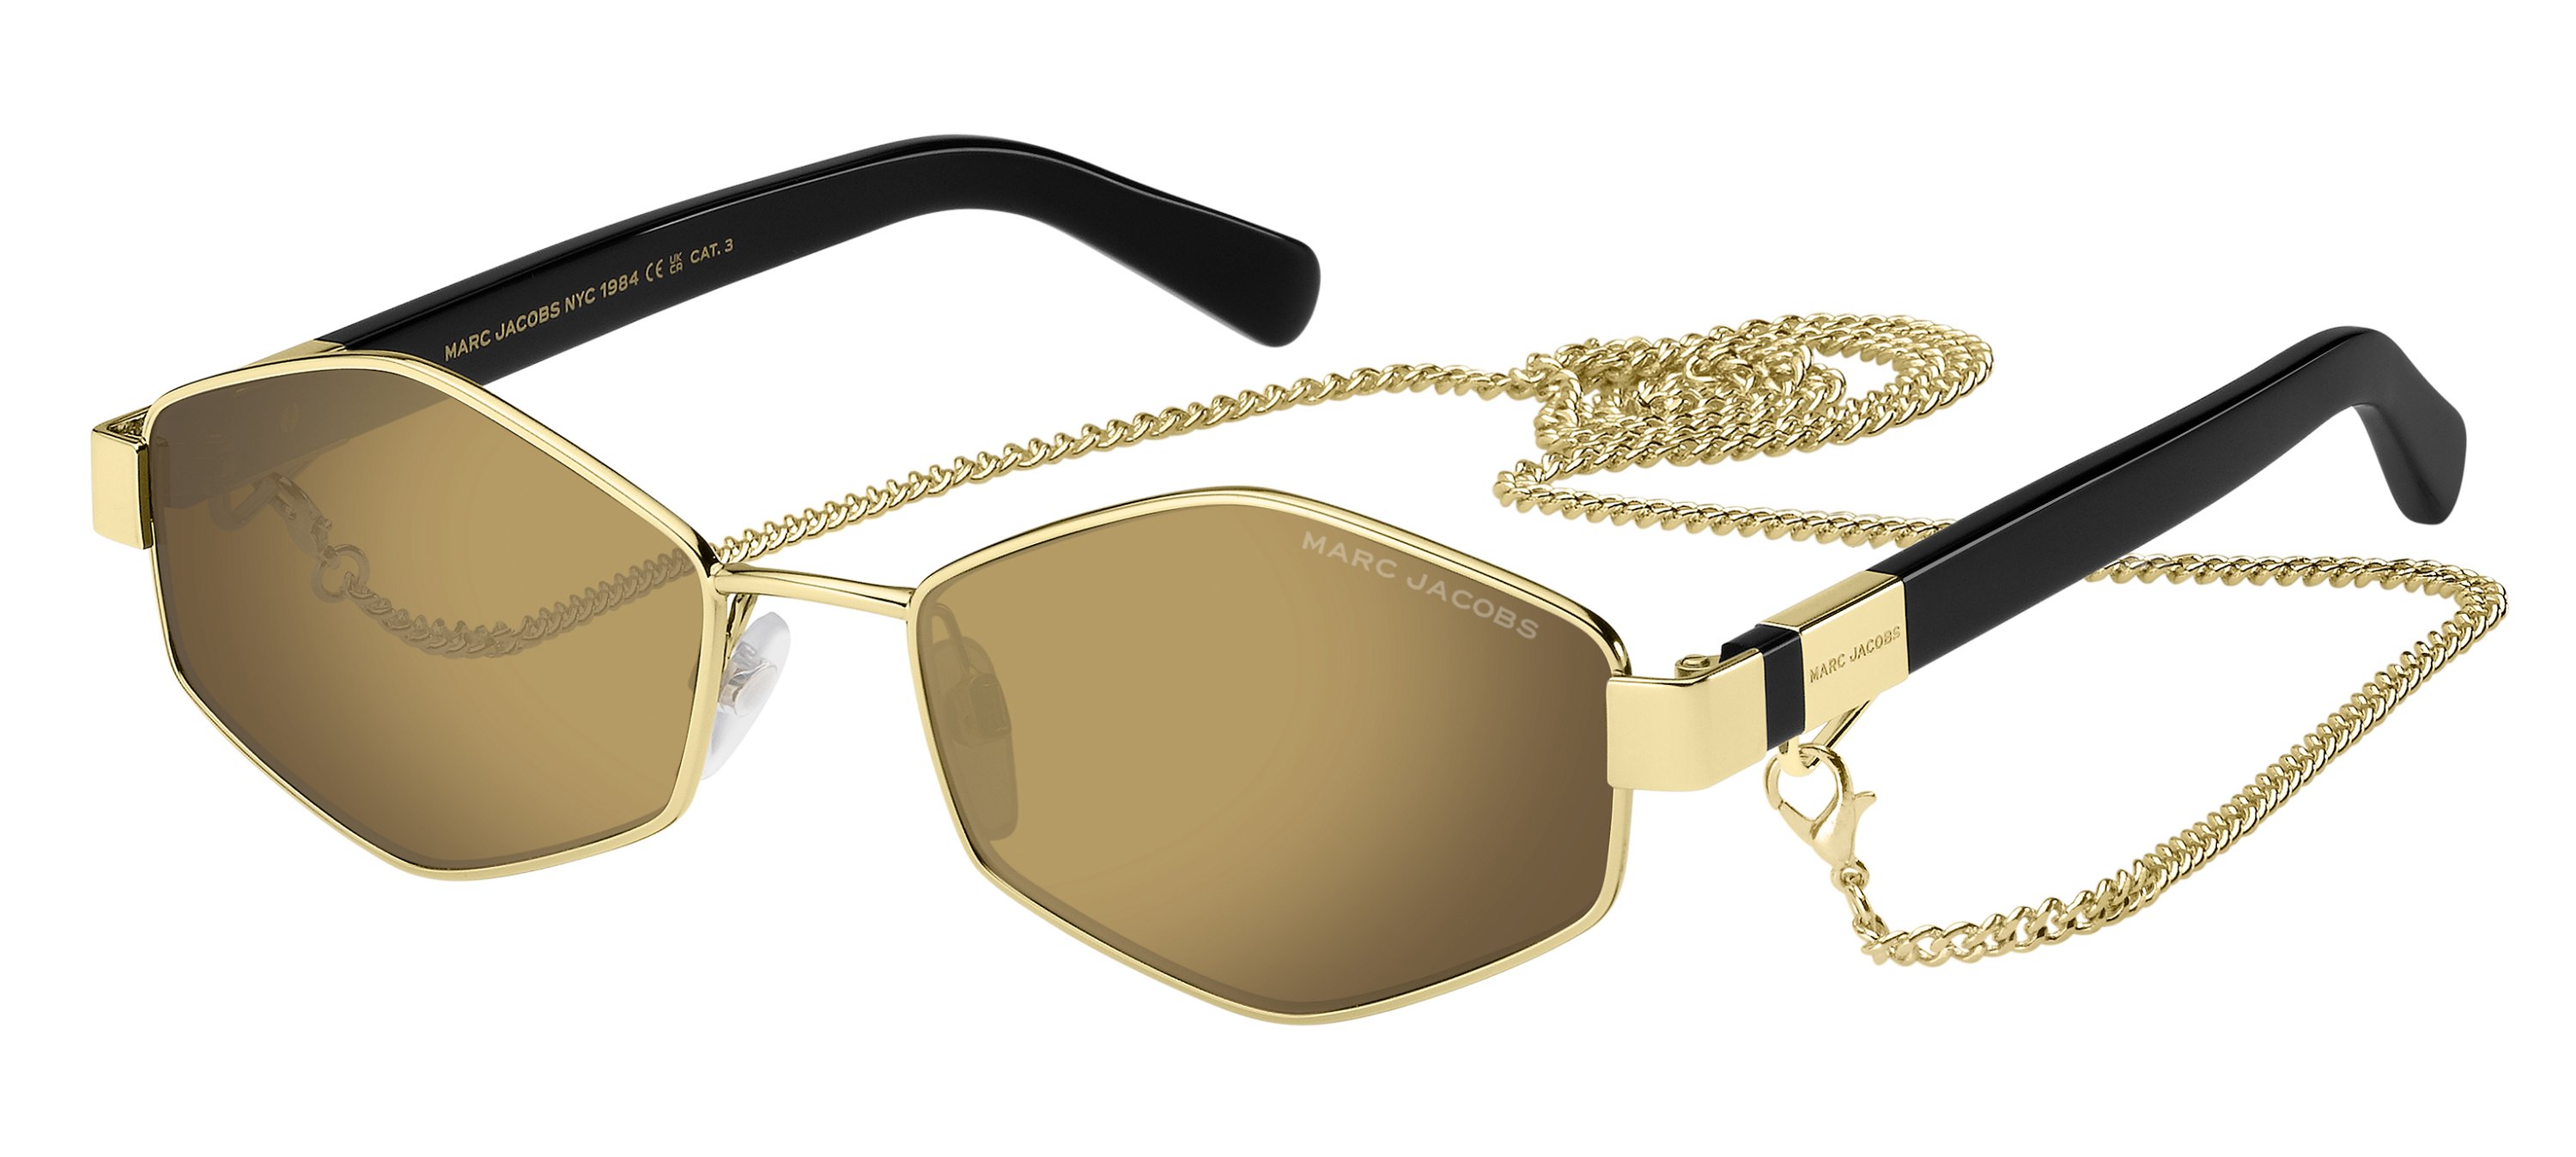 Das Bild zeigt die Sonnenbrille marc_496_s_rhl von Marc Jacobs in gold black.